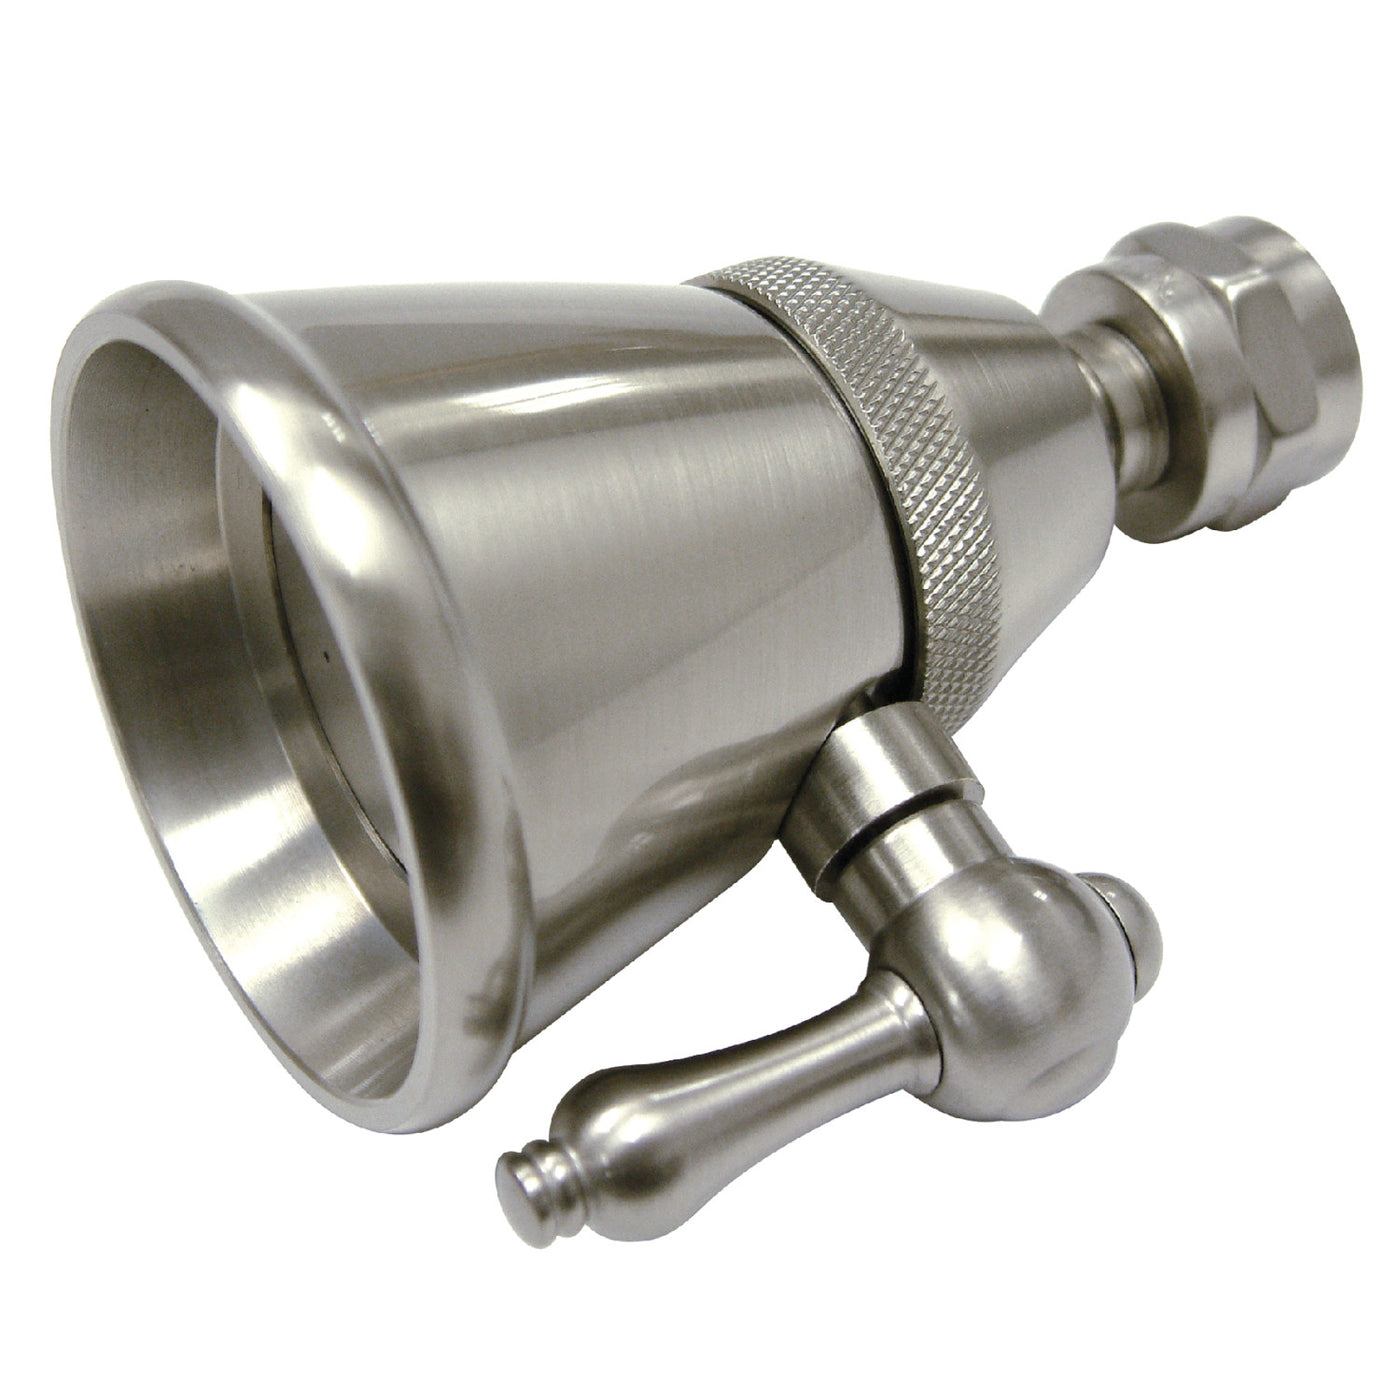 Elements of Design DK1328 Adjustable Shower Head, Brushed Nickel